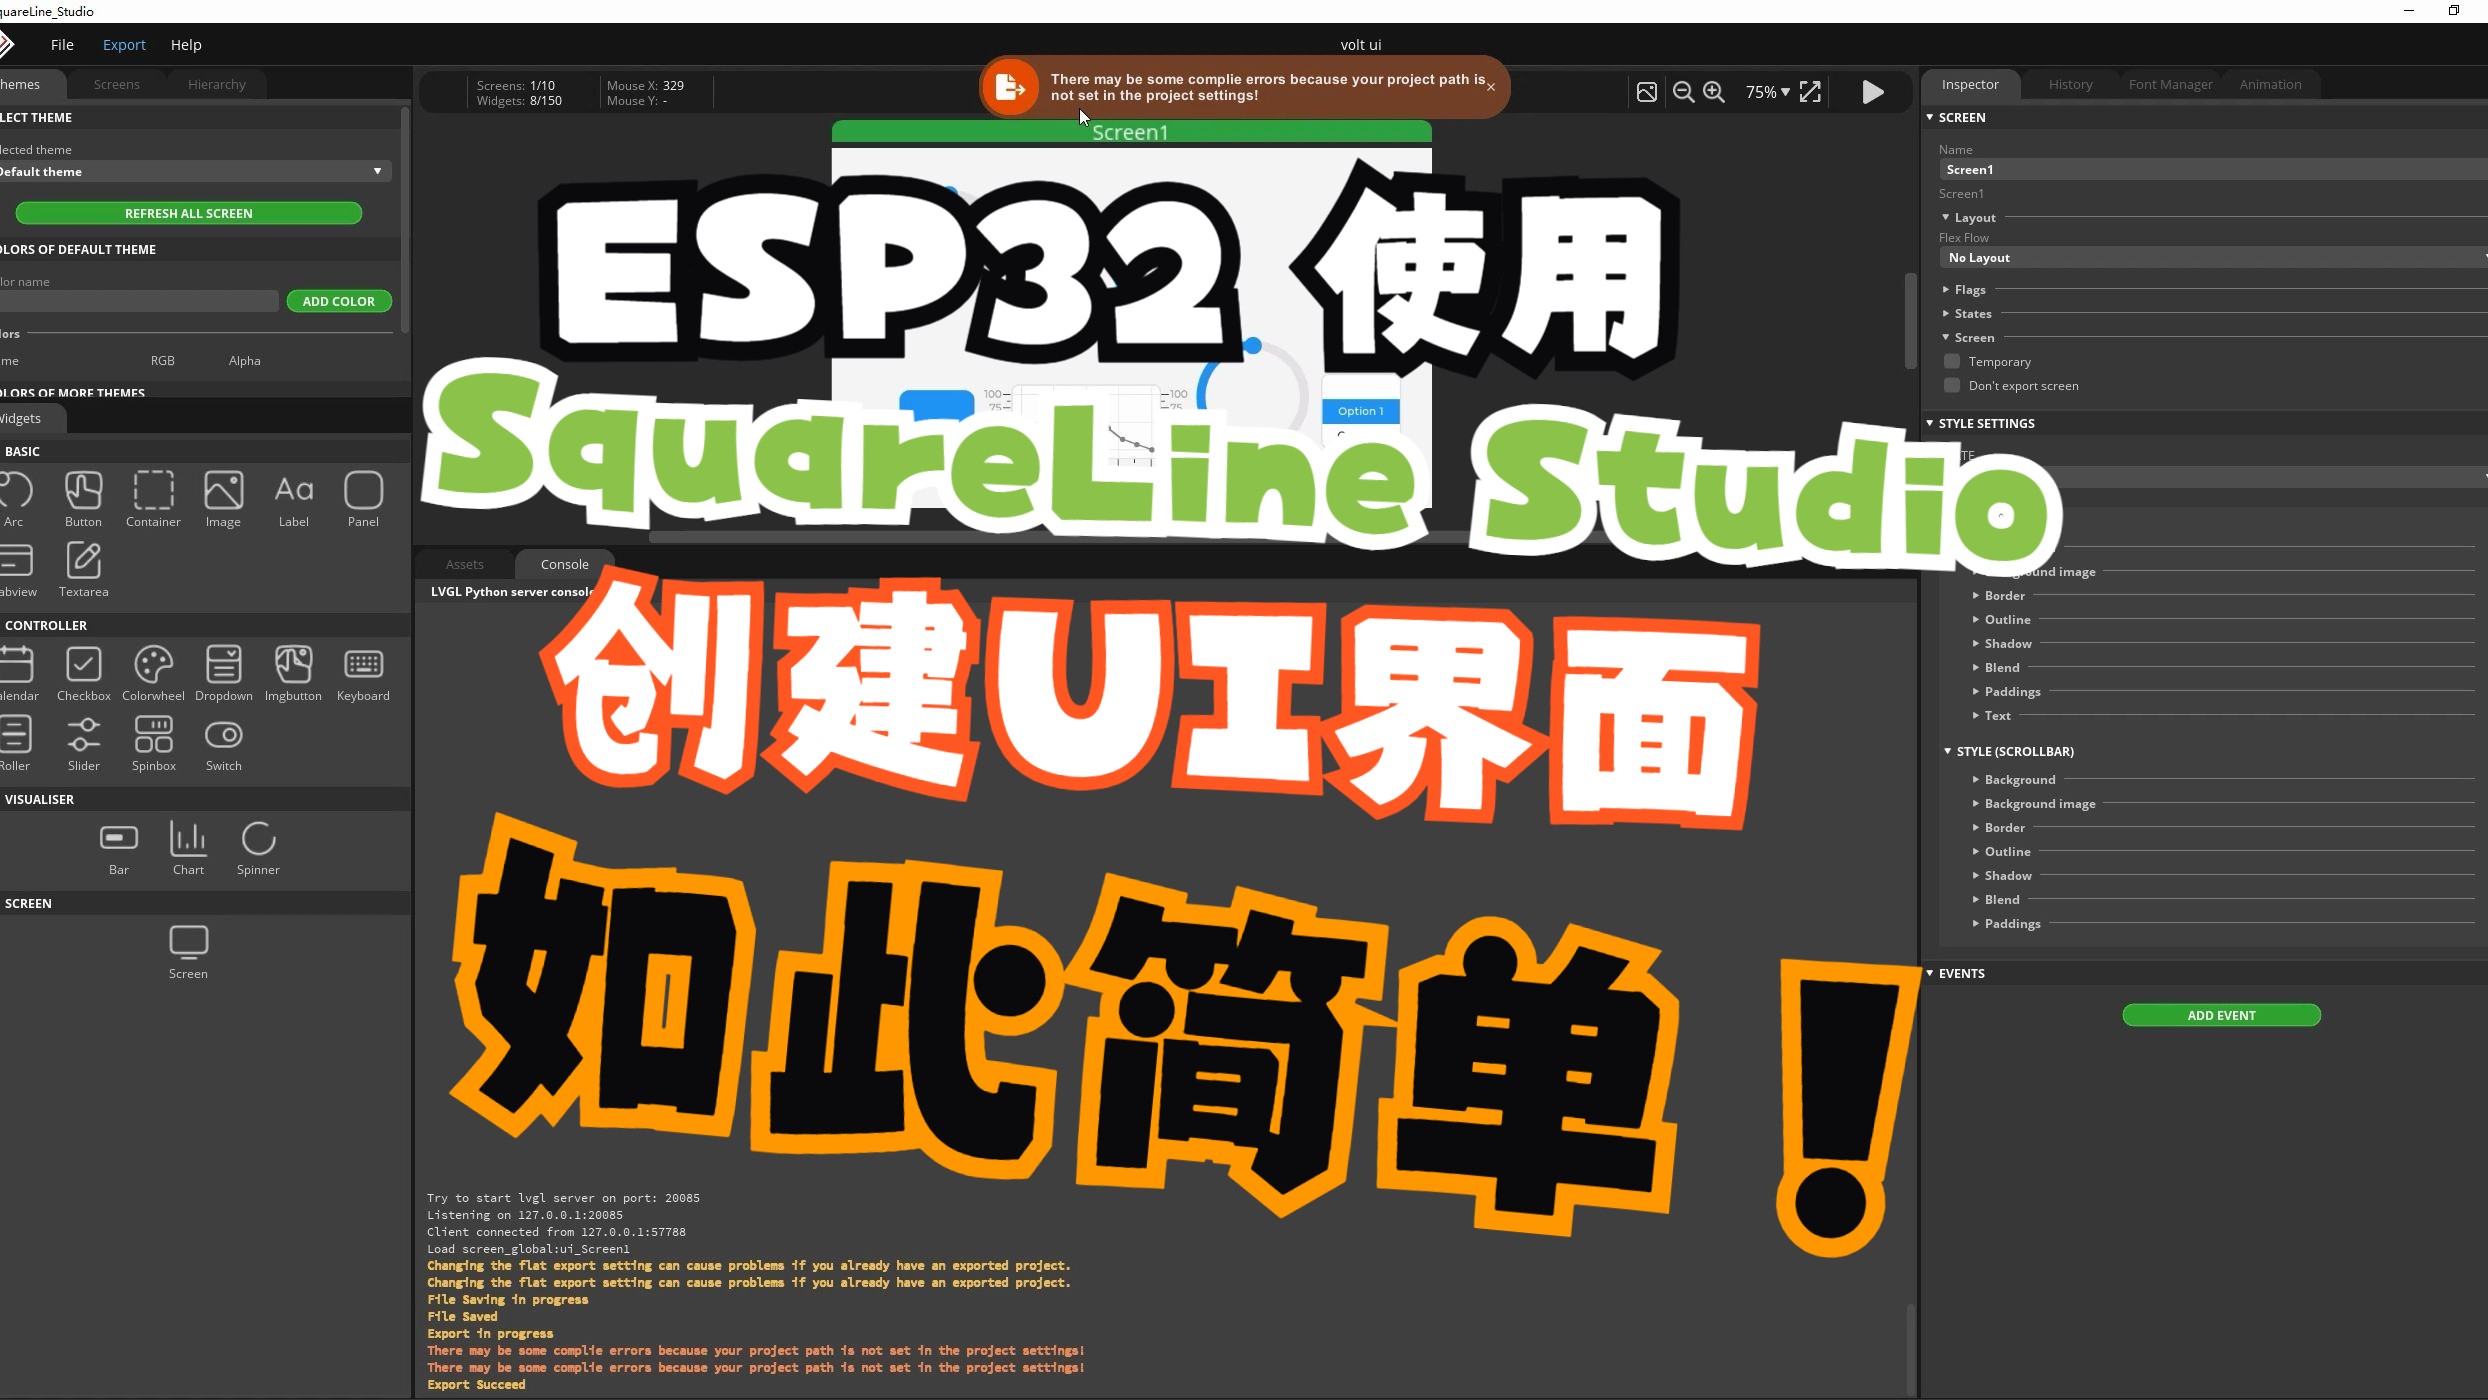 【ESP32】ESP32S3开发板 | 使用Espressif IDE | SquareLine Studio 创建UI界面 | 基于LVGL